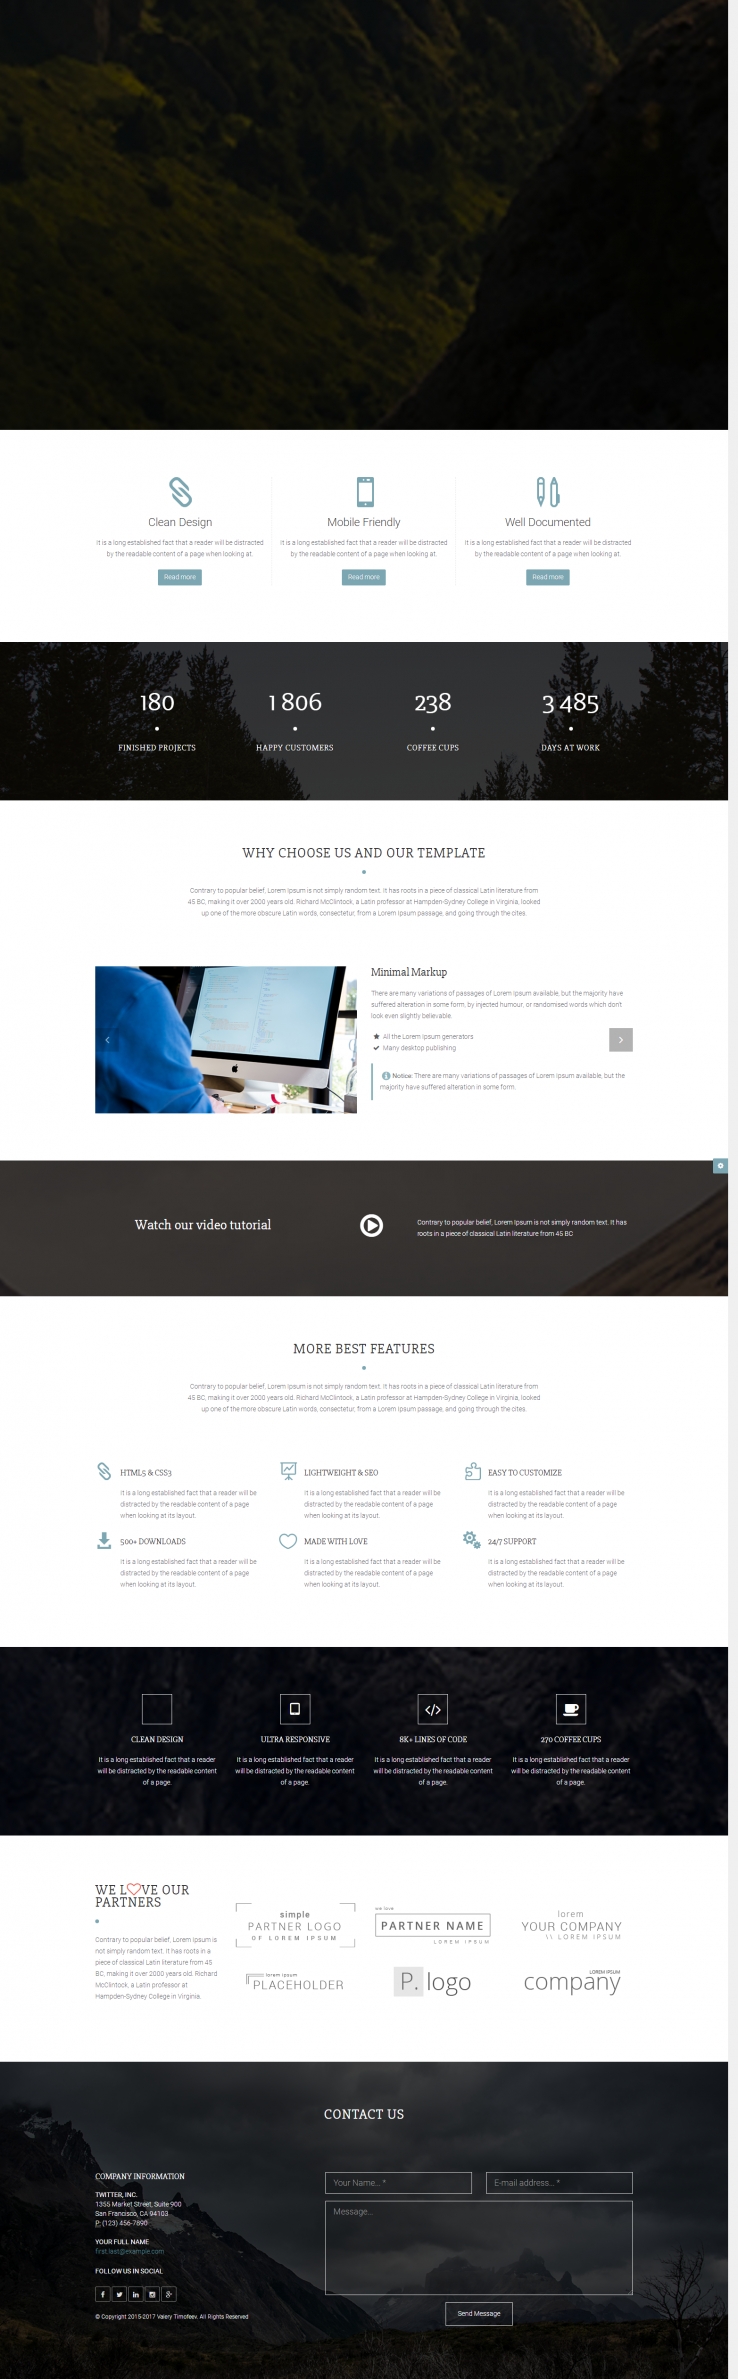 白色宽屏风格的CSS3企业网站模板